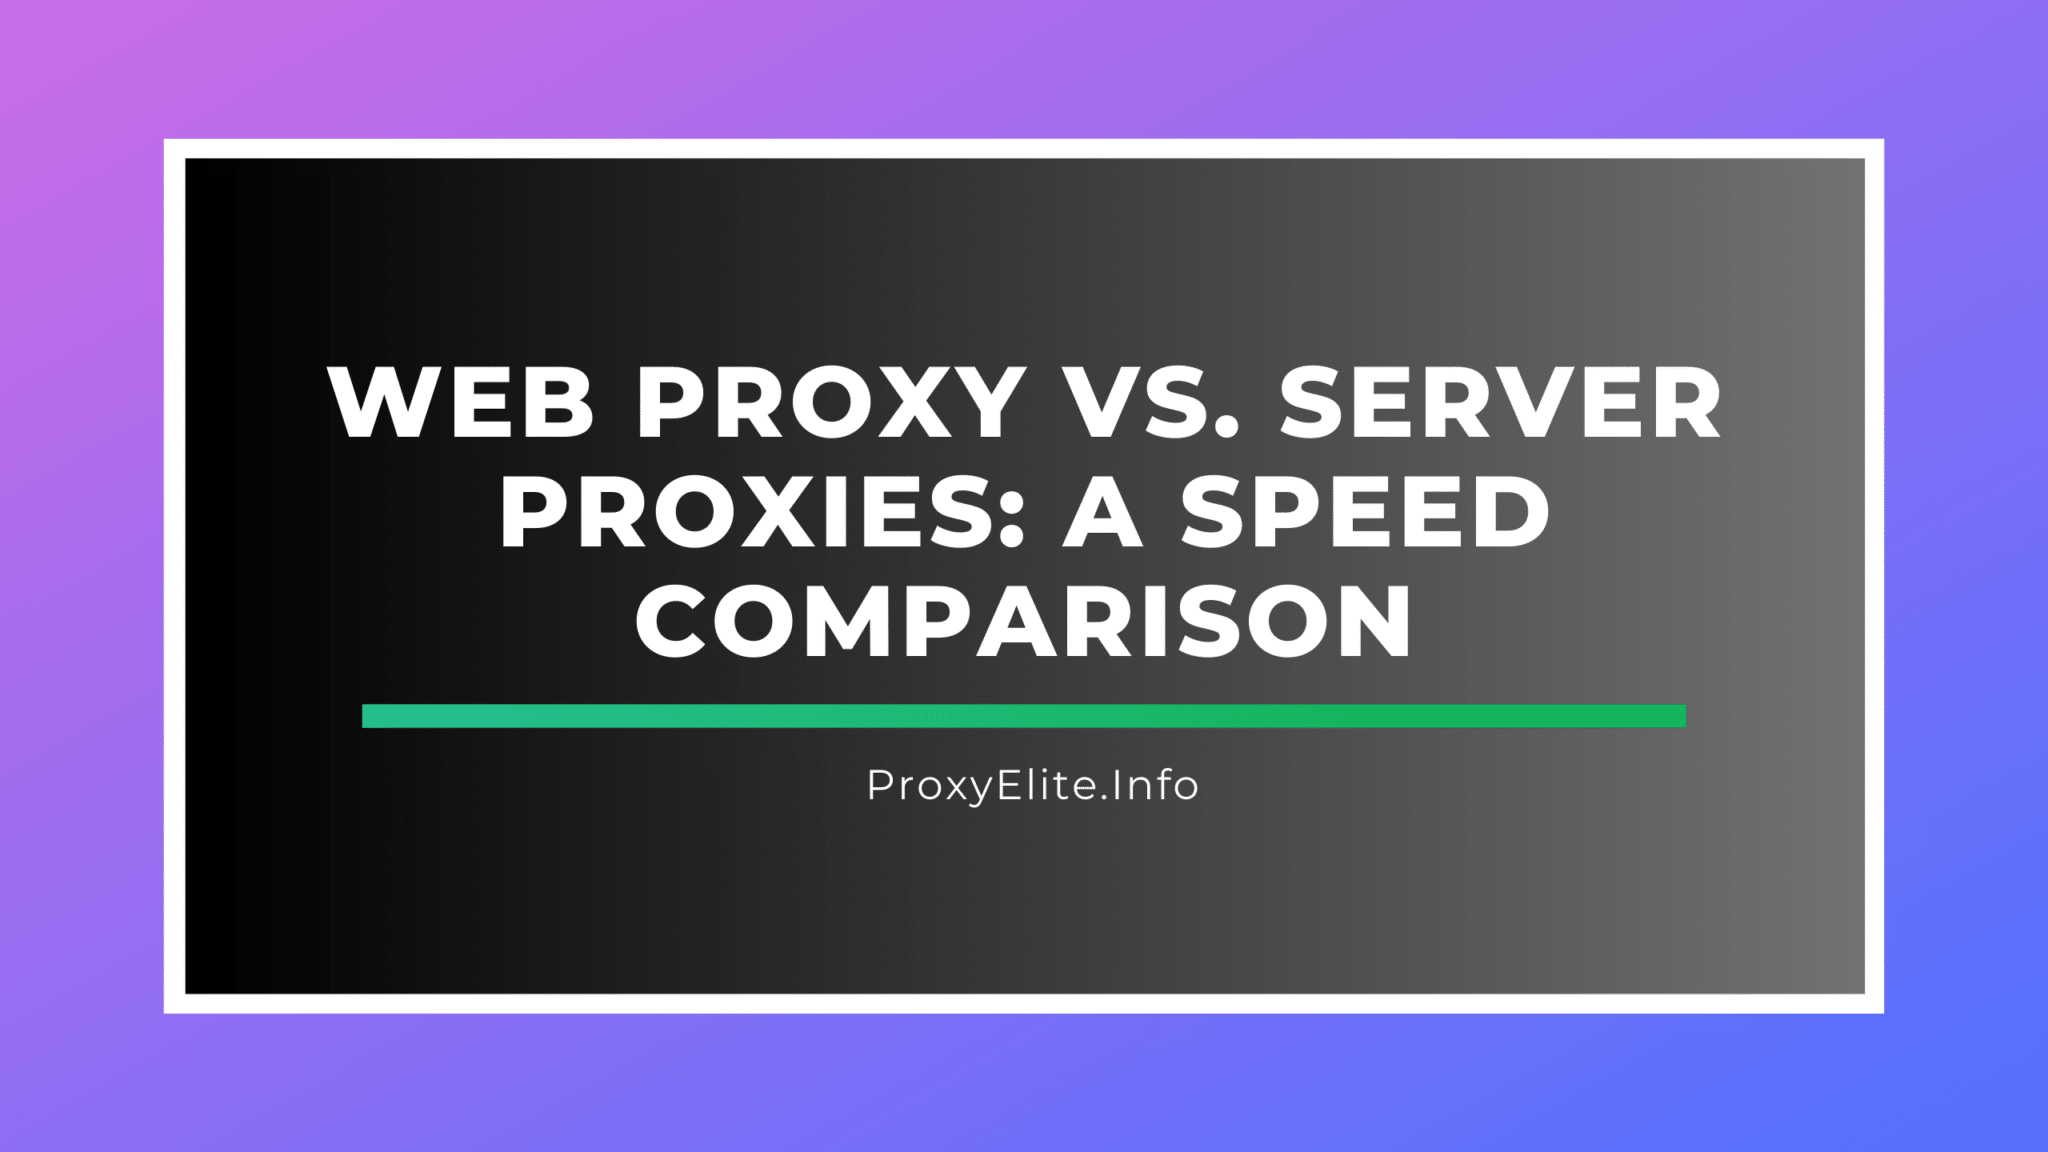 Веб-прокси и серверные прокси: сравнение скорости